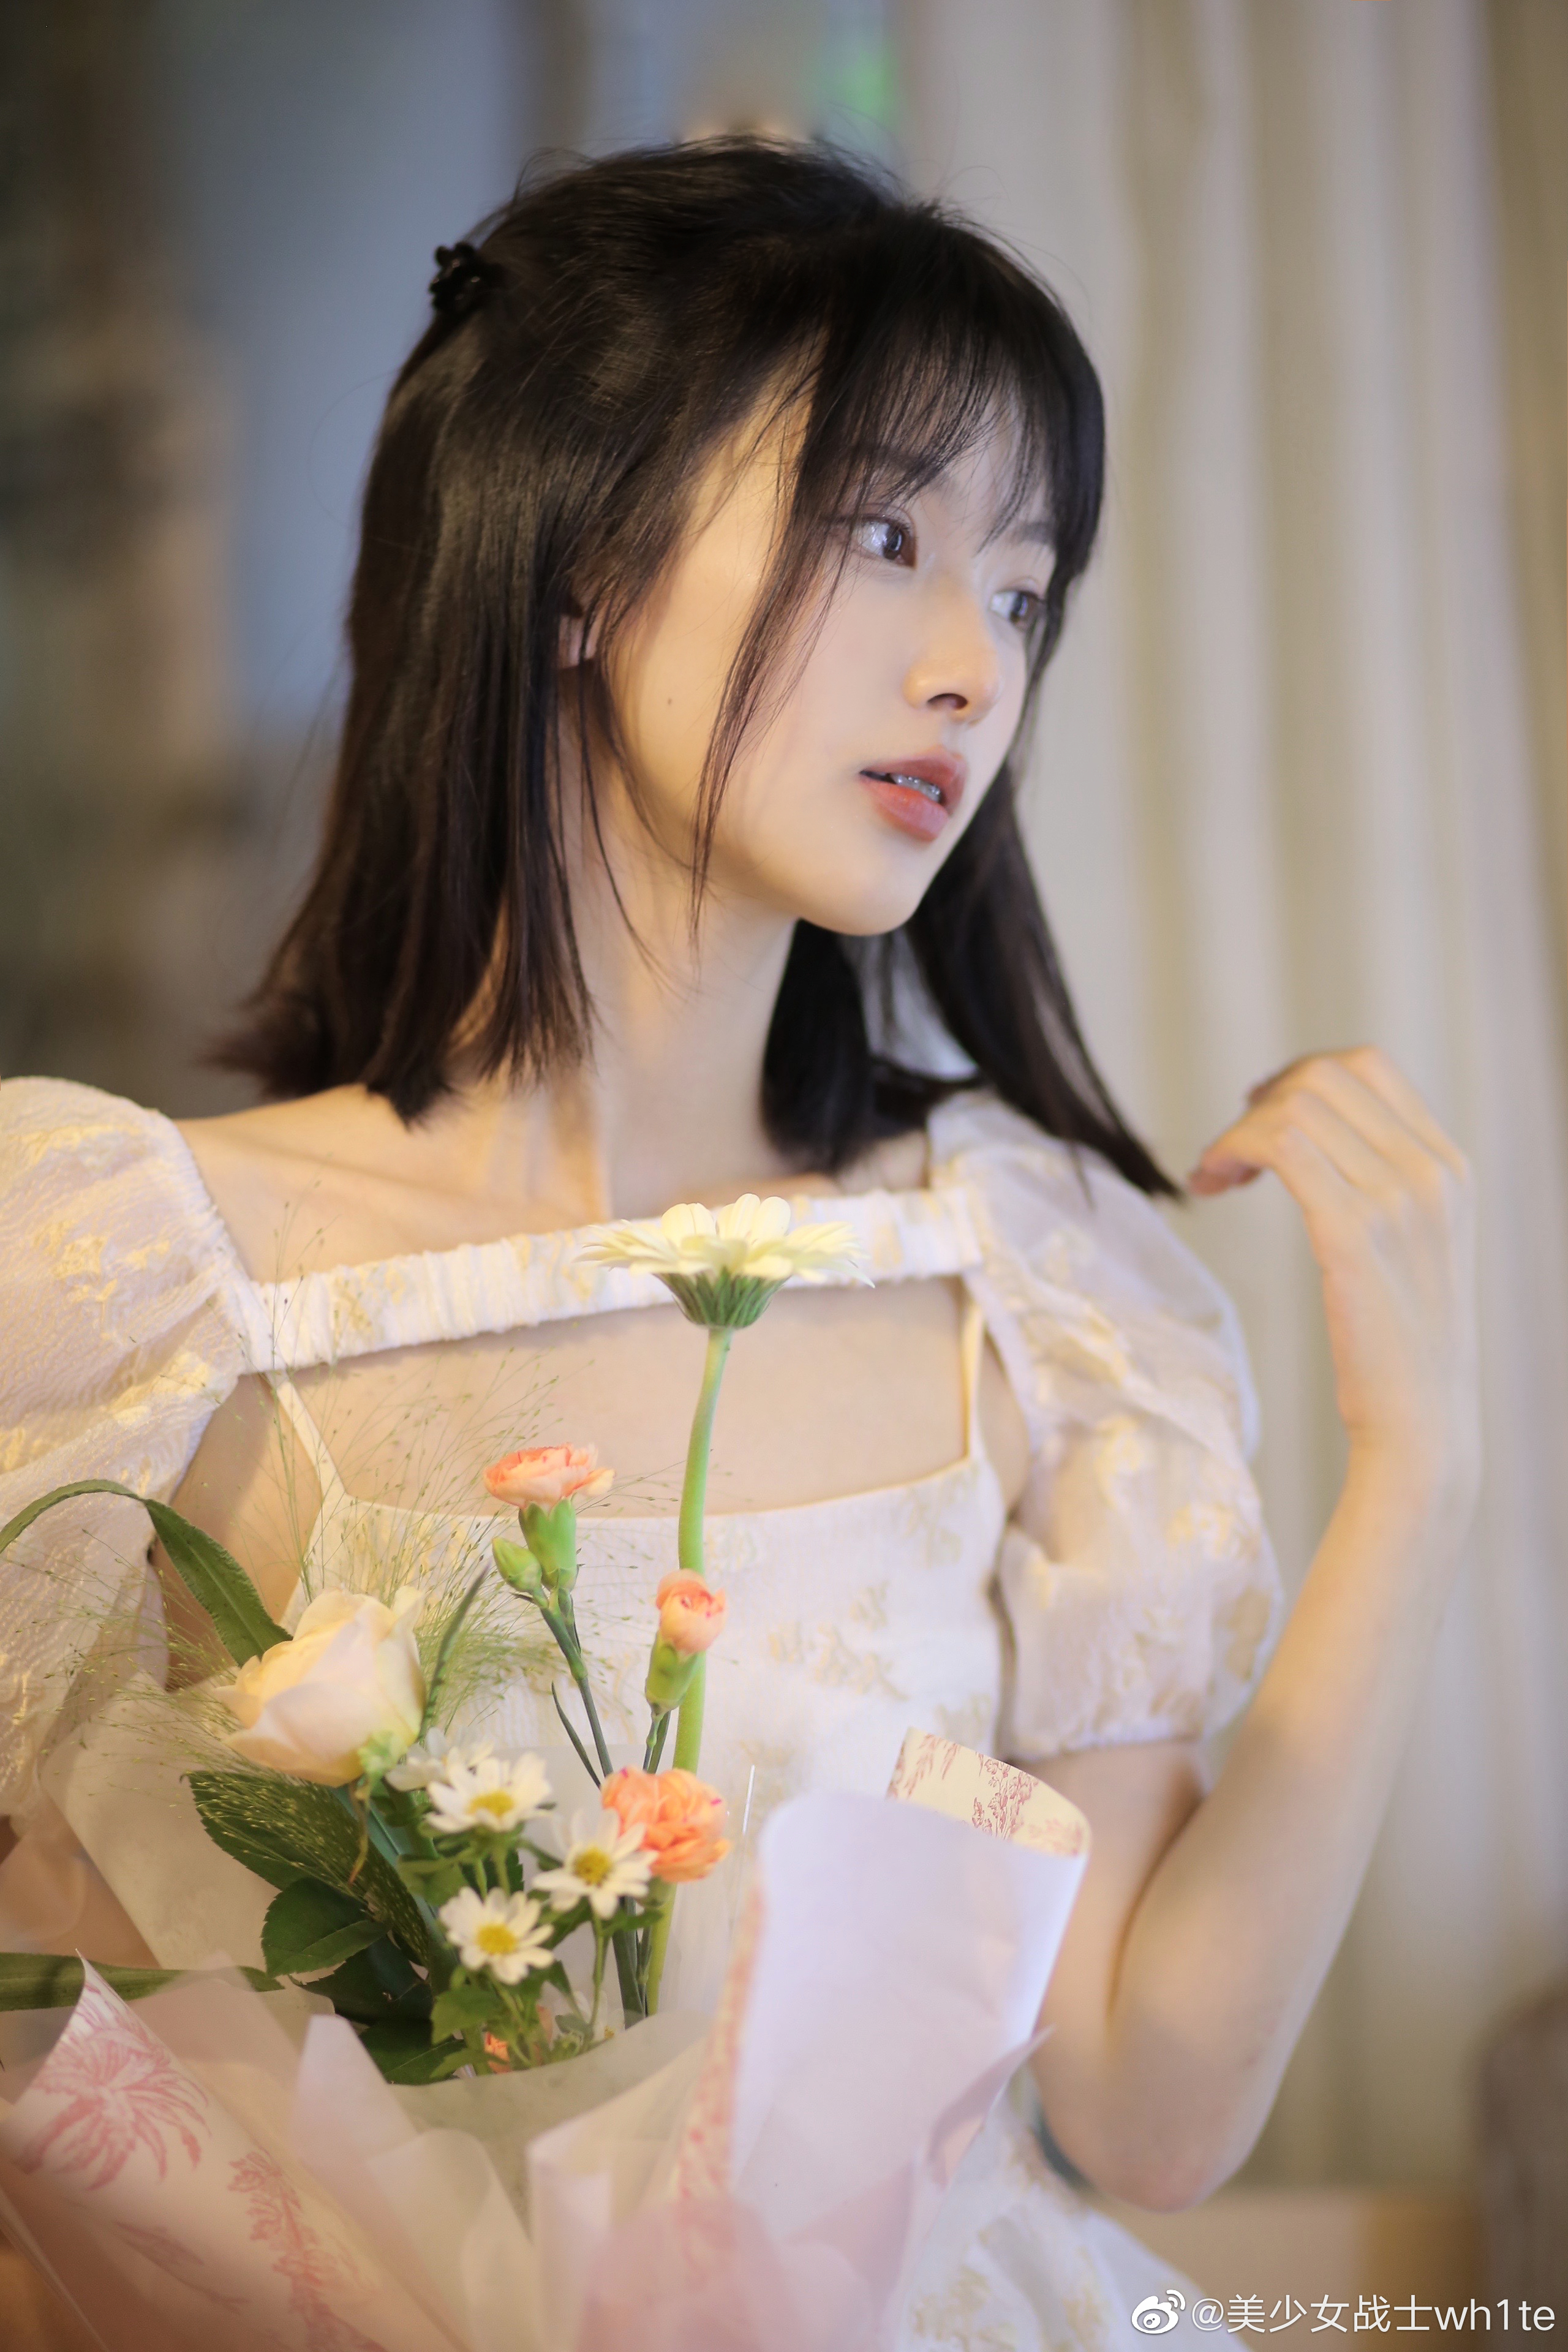 People 2560x3840 women short hair Chinese Asian model brunette white dress flowers women indoors